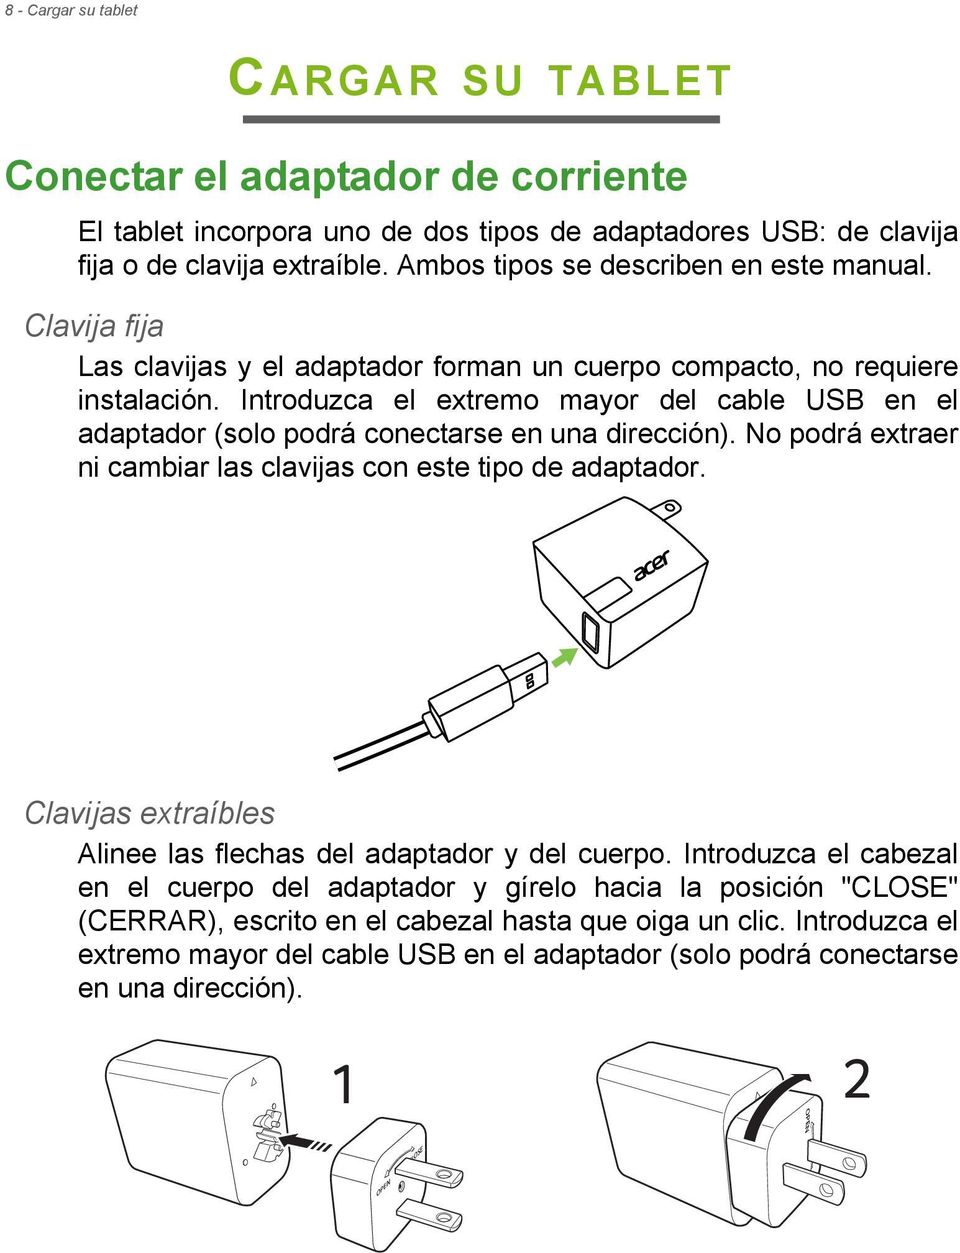 Introduzca el extremo mayor del cable USB en el adaptador (solo podrá conectarse en una dirección). No podrá extraer ni cambiar las clavijas con este tipo de adaptador.